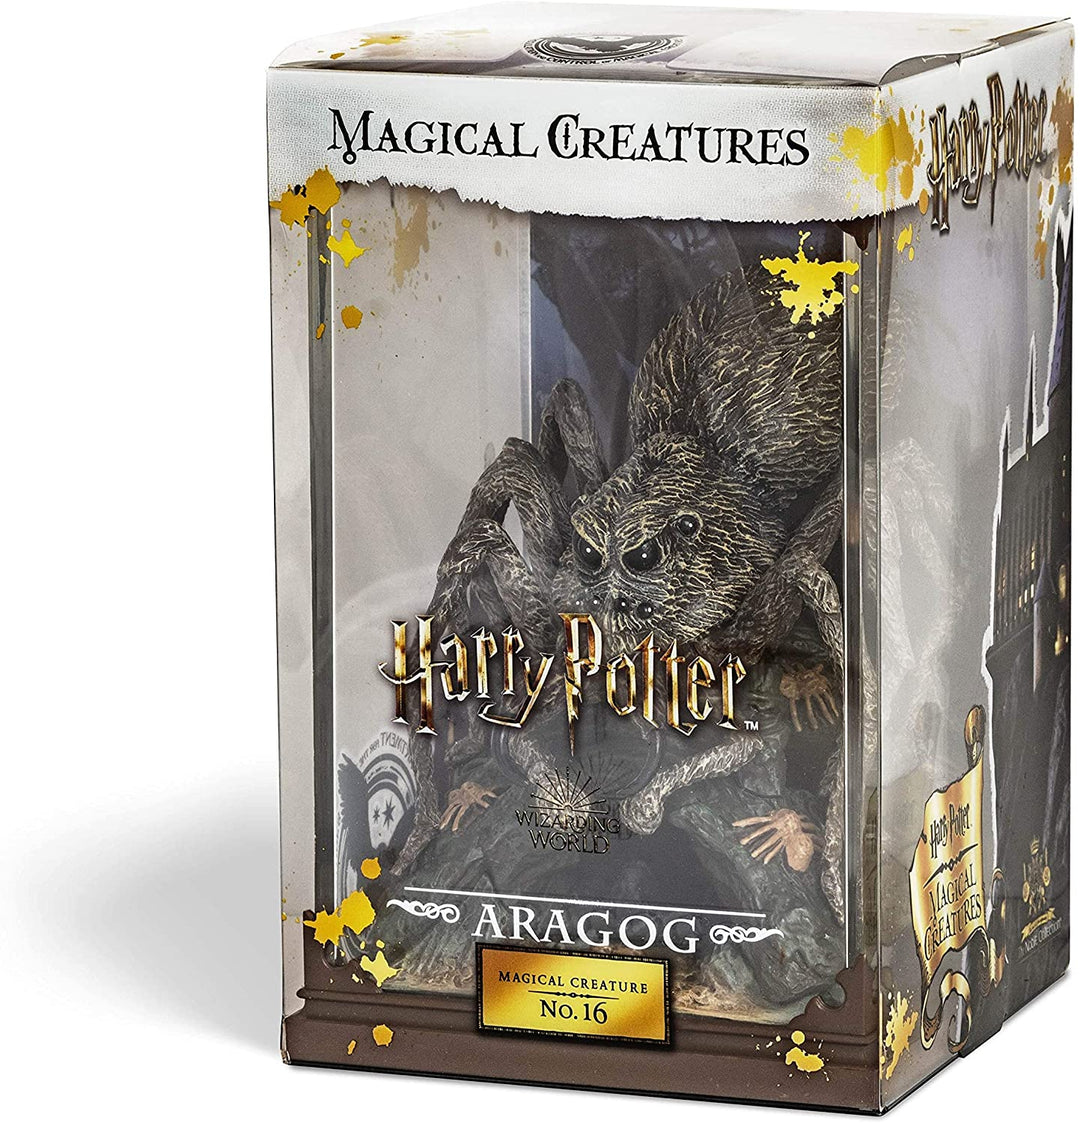 The Noble Collection – Magische Kreaturen Aragog – handbemalte magische Kreatur Nr. 16 – offiziell lizenzierte 7 Zoll (18,5 cm) Harry Potter Toys Sammelfiguren – für Kinder und Erwachsene